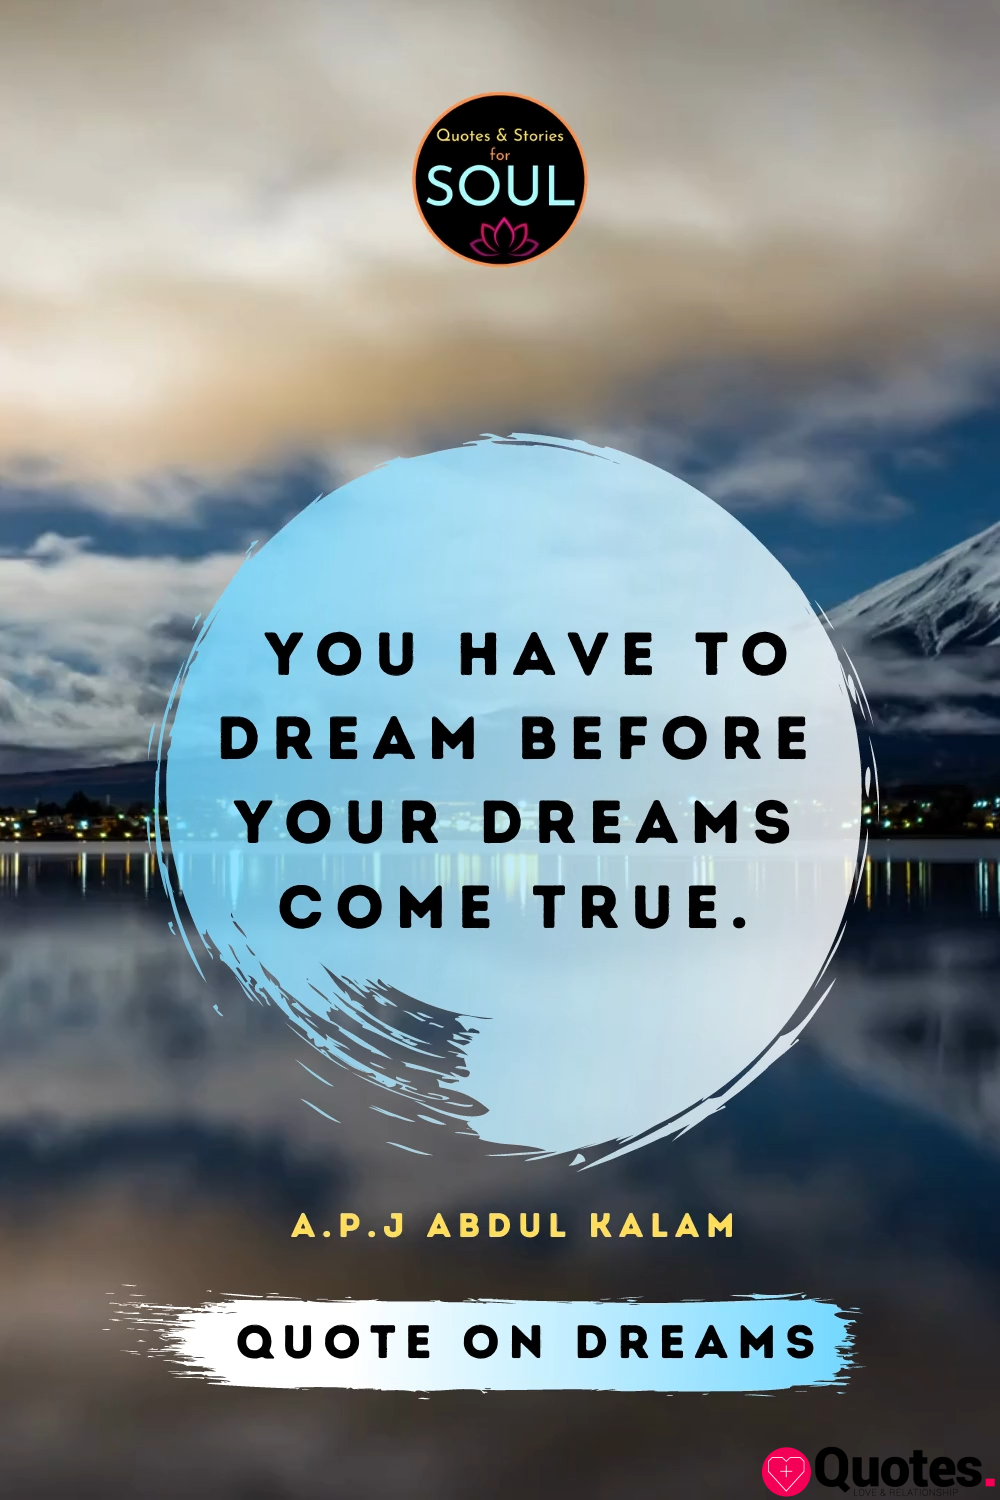 Abdul Kalam Quotes About Dream - 10 APJ Abdul Kalam Quotes That Will ...
